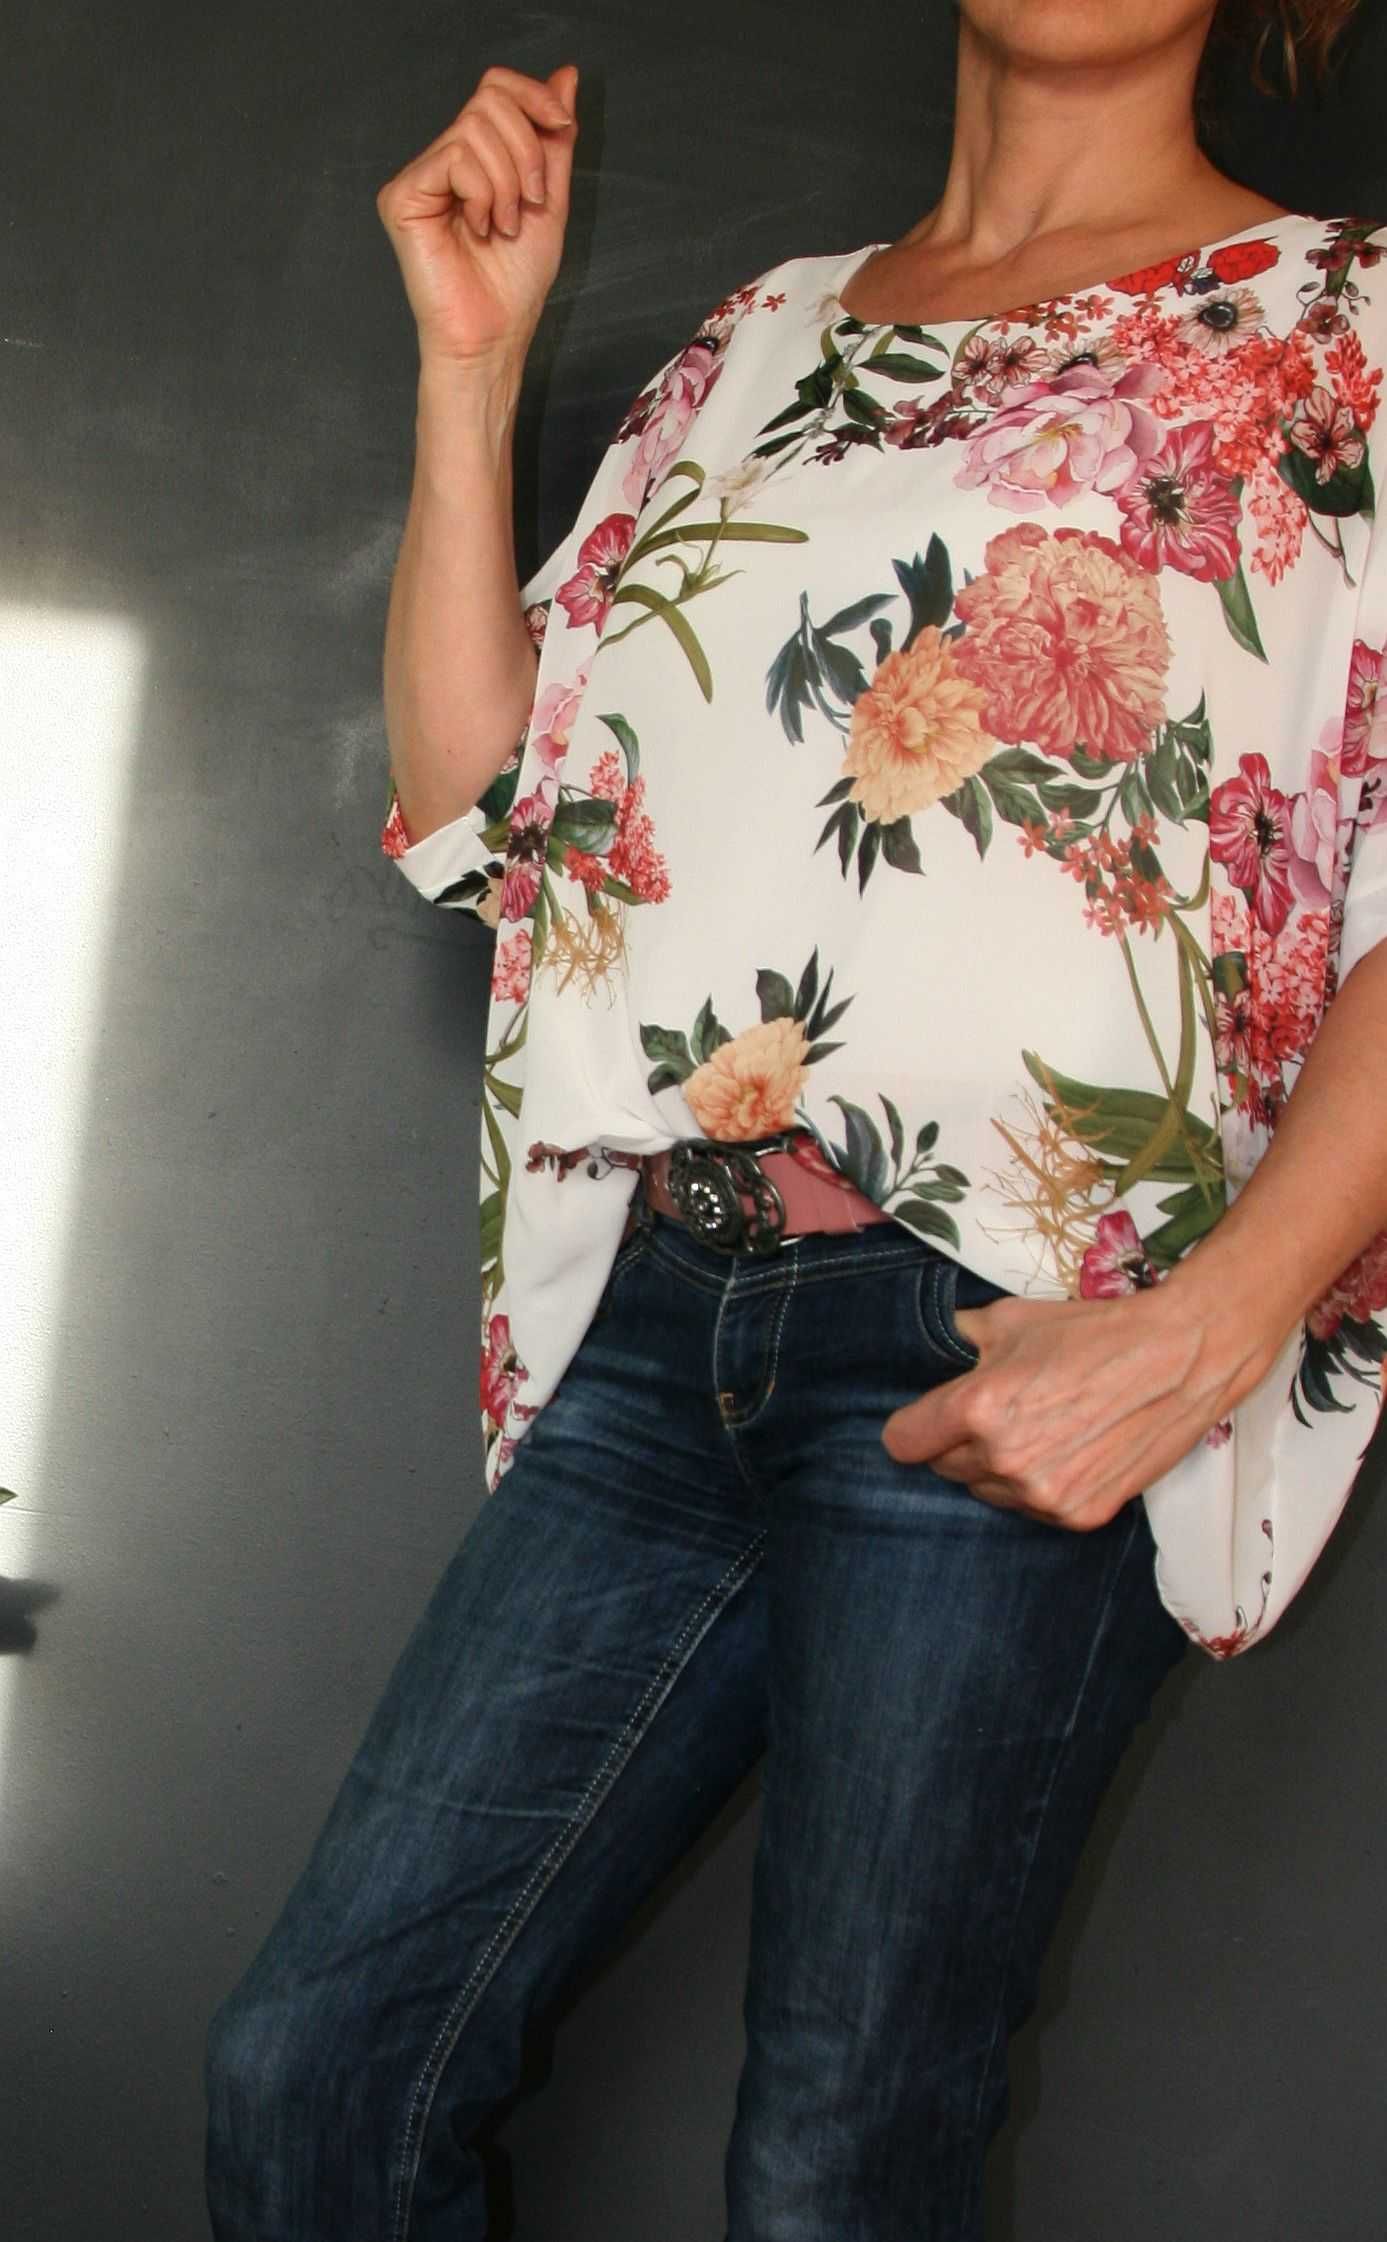 Włoska bluzka New Collection, kwiaty, rozmiar M/L